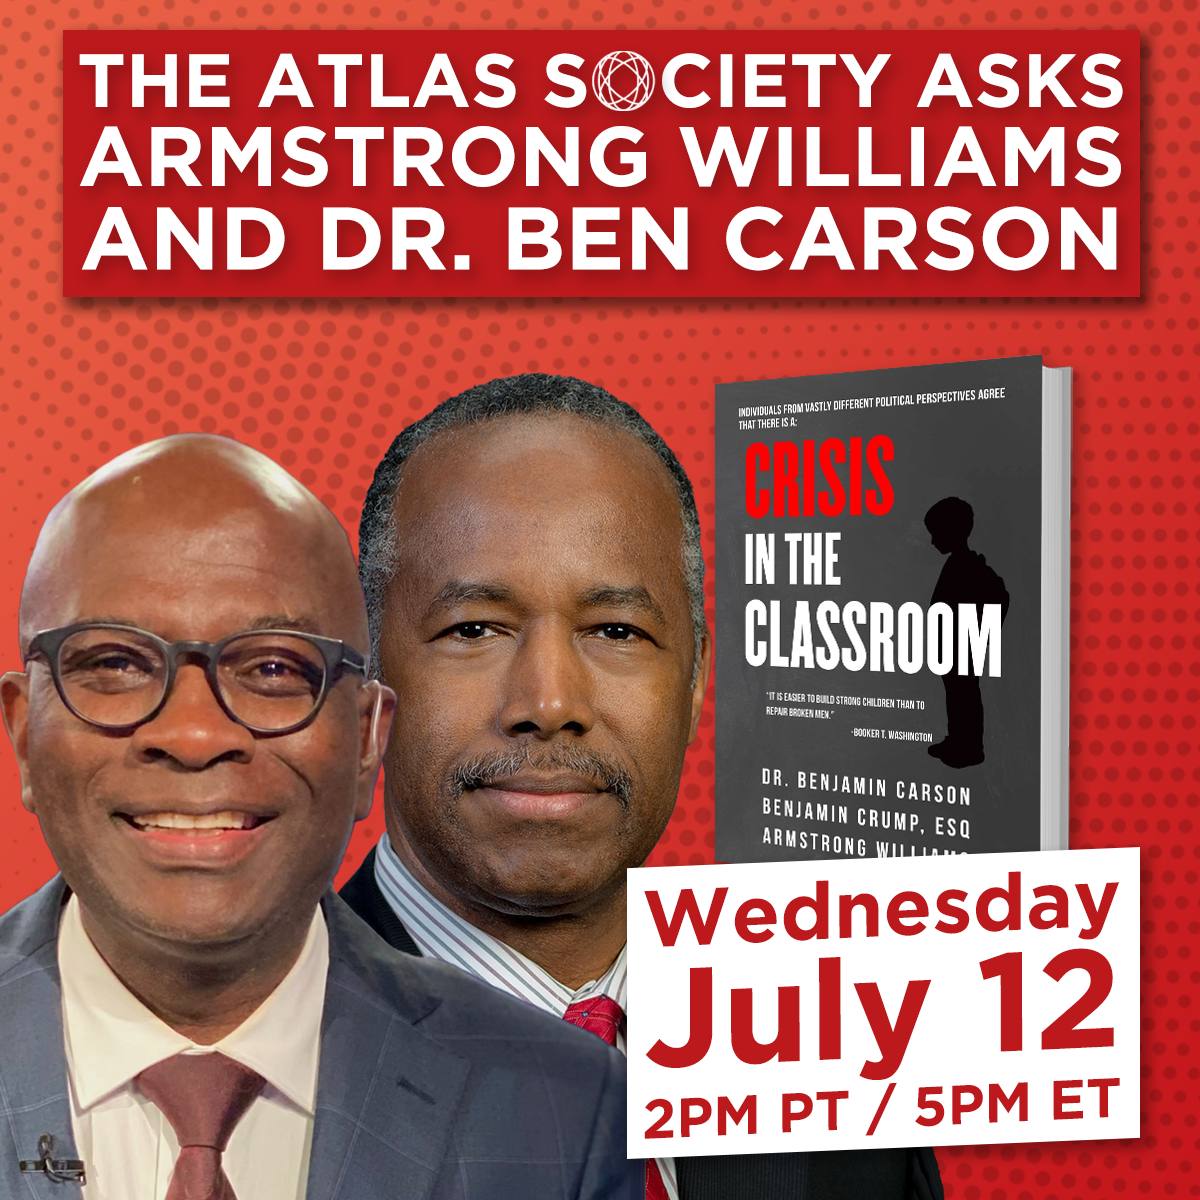 Crisis in the Classroom: The Atlas Society Asks Armstrong Williams & Dr. Ben Carson